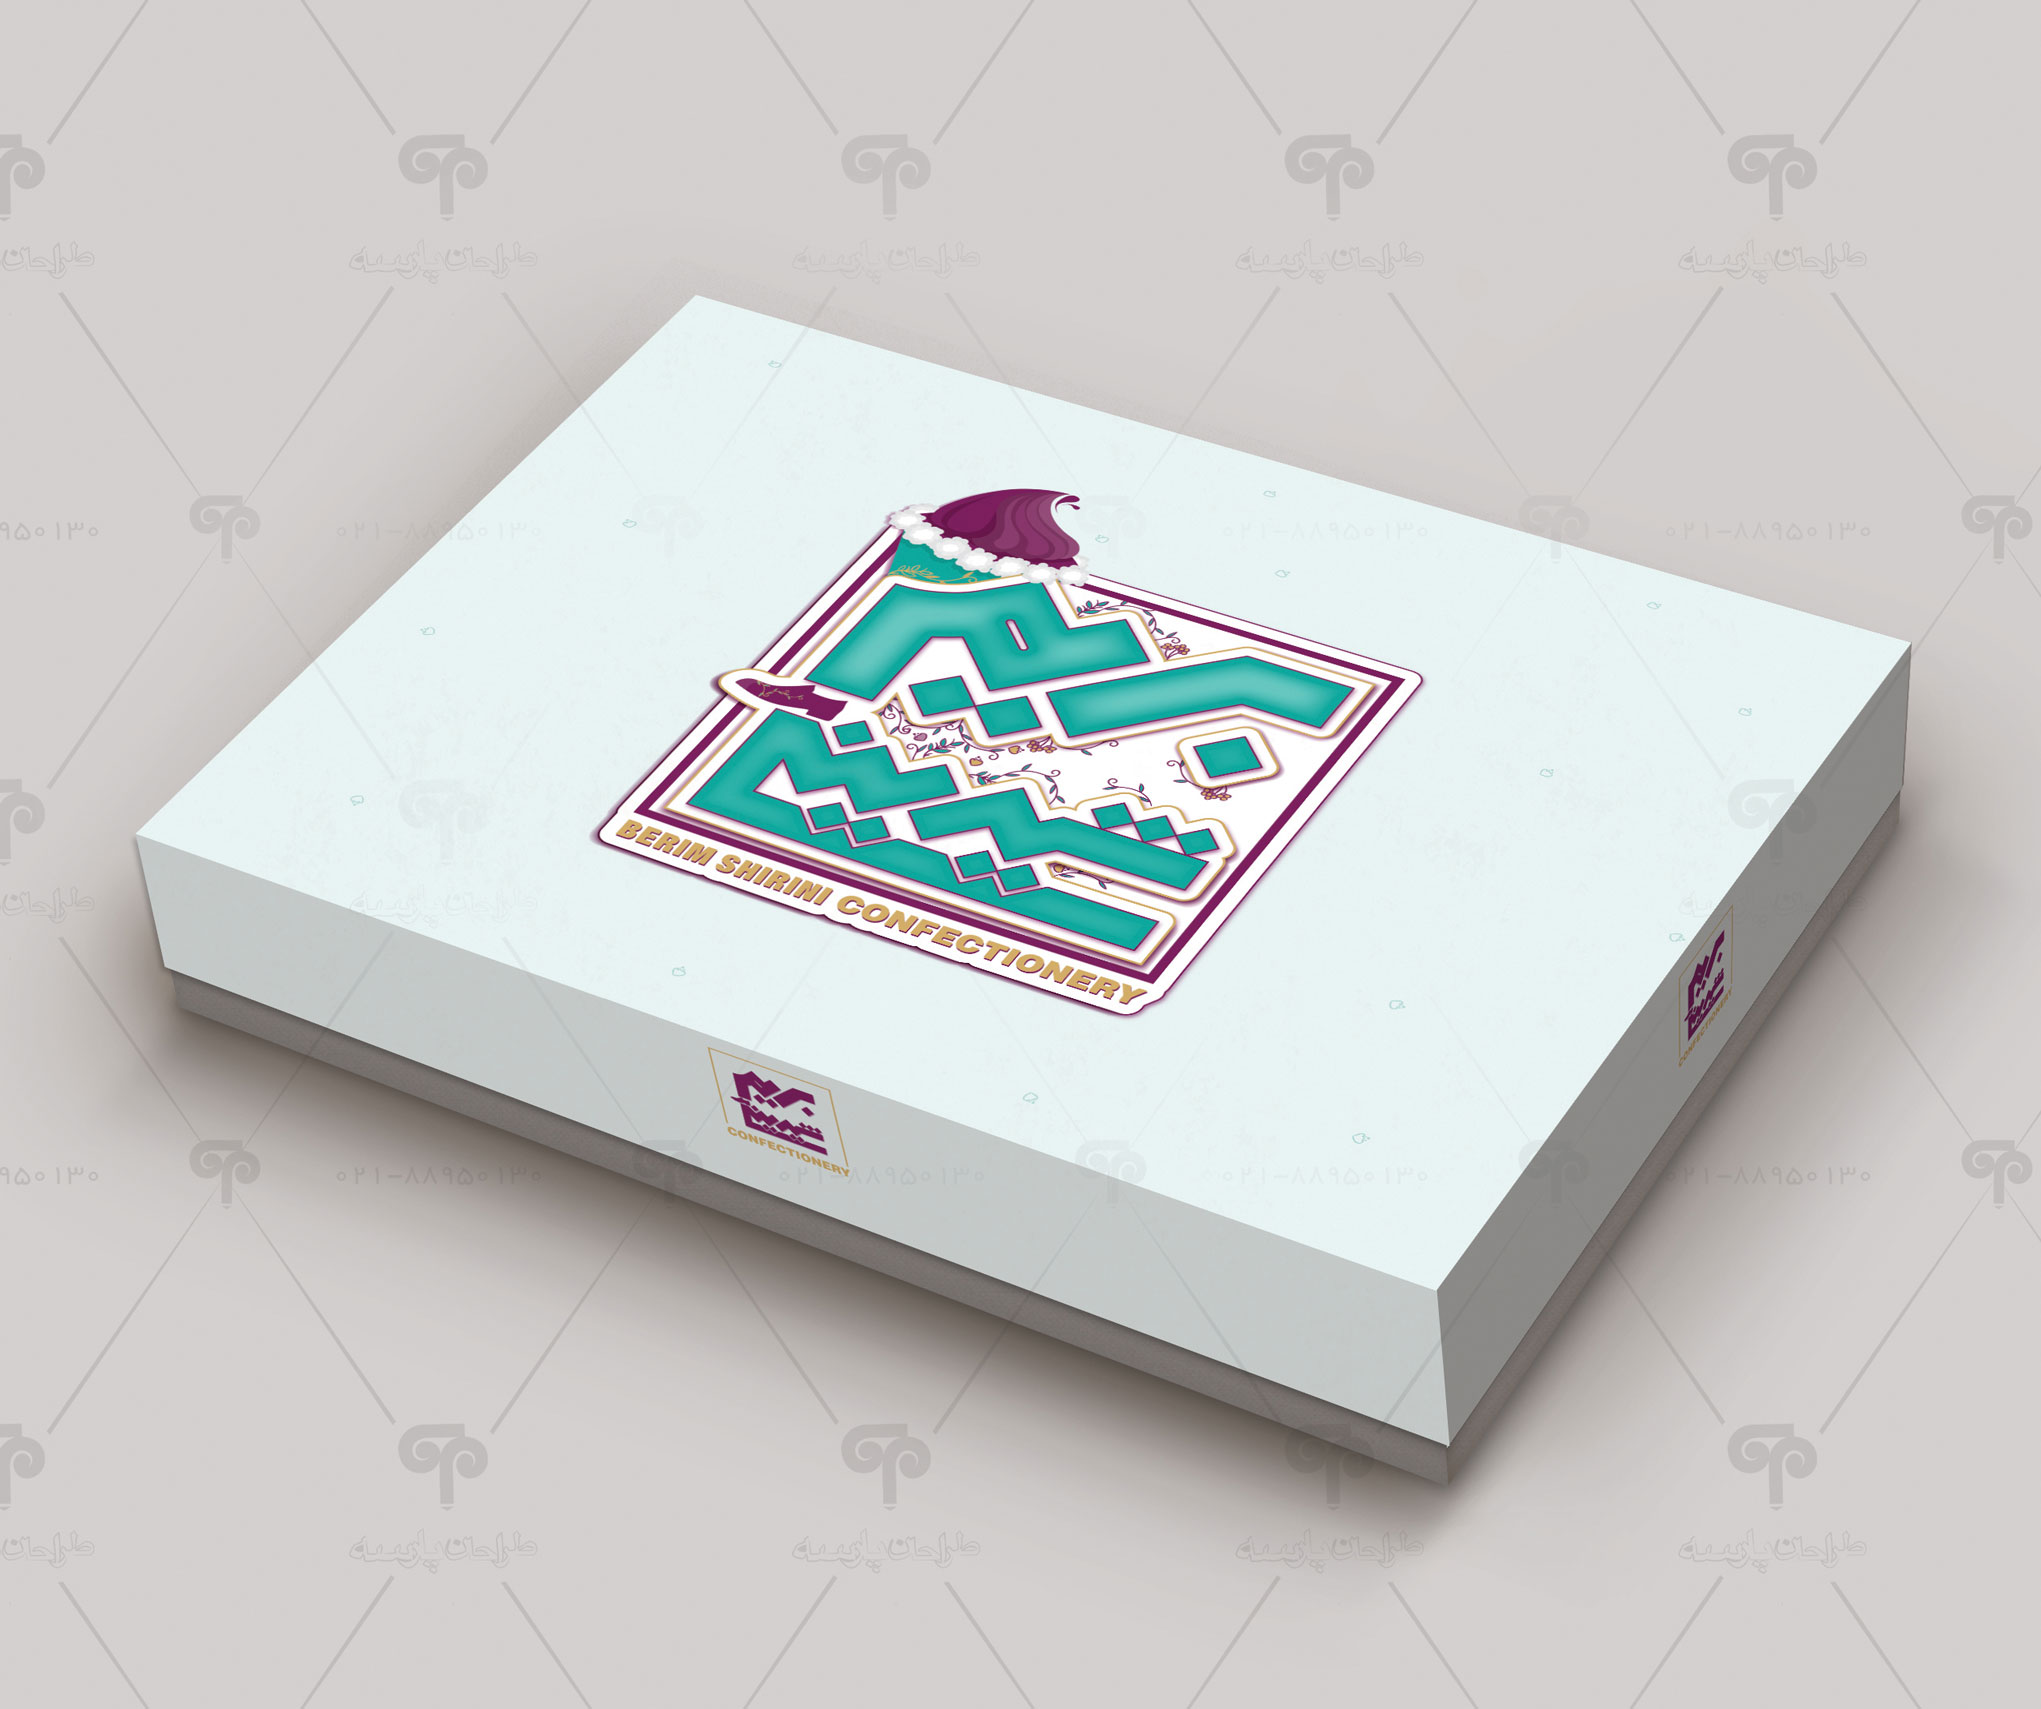 طراحی جعبه شیرینی بریم شیرینی